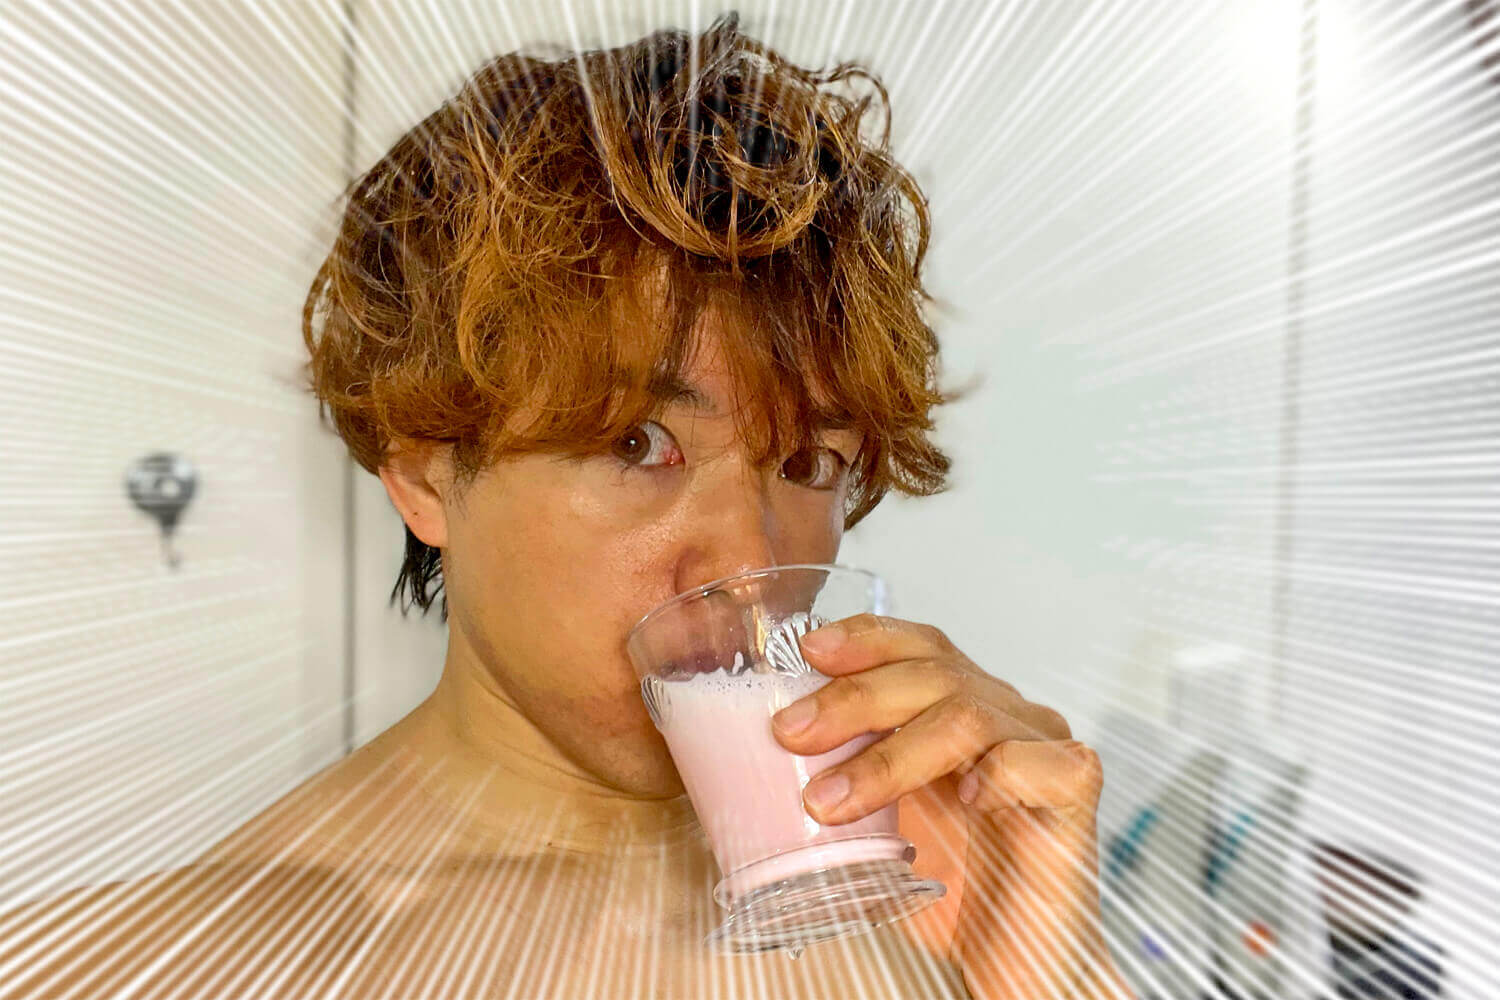 マイプロテイン ホエイプロテイン 桜ストロベリーミルク味 筋肉料理研究家Ryota